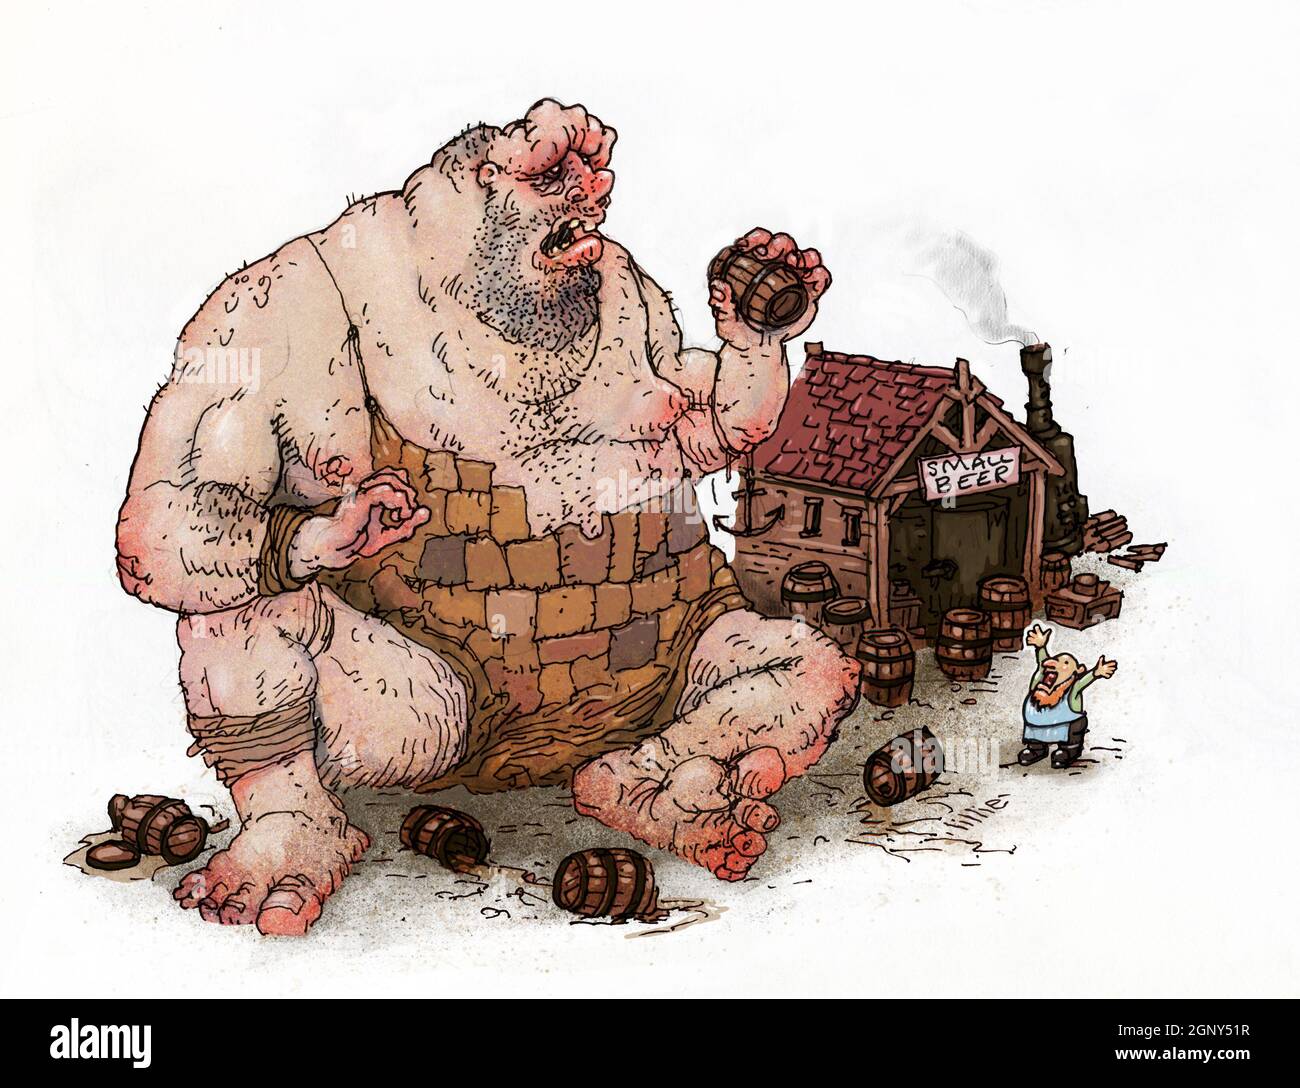 Illustration artistique d'un géant ivre qui vole de la bière dans une brasserie, brasseur regardant en colère. Fiction fantaisie, mythe, légende, jeux de rôle, D&D, folklore Banque D'Images